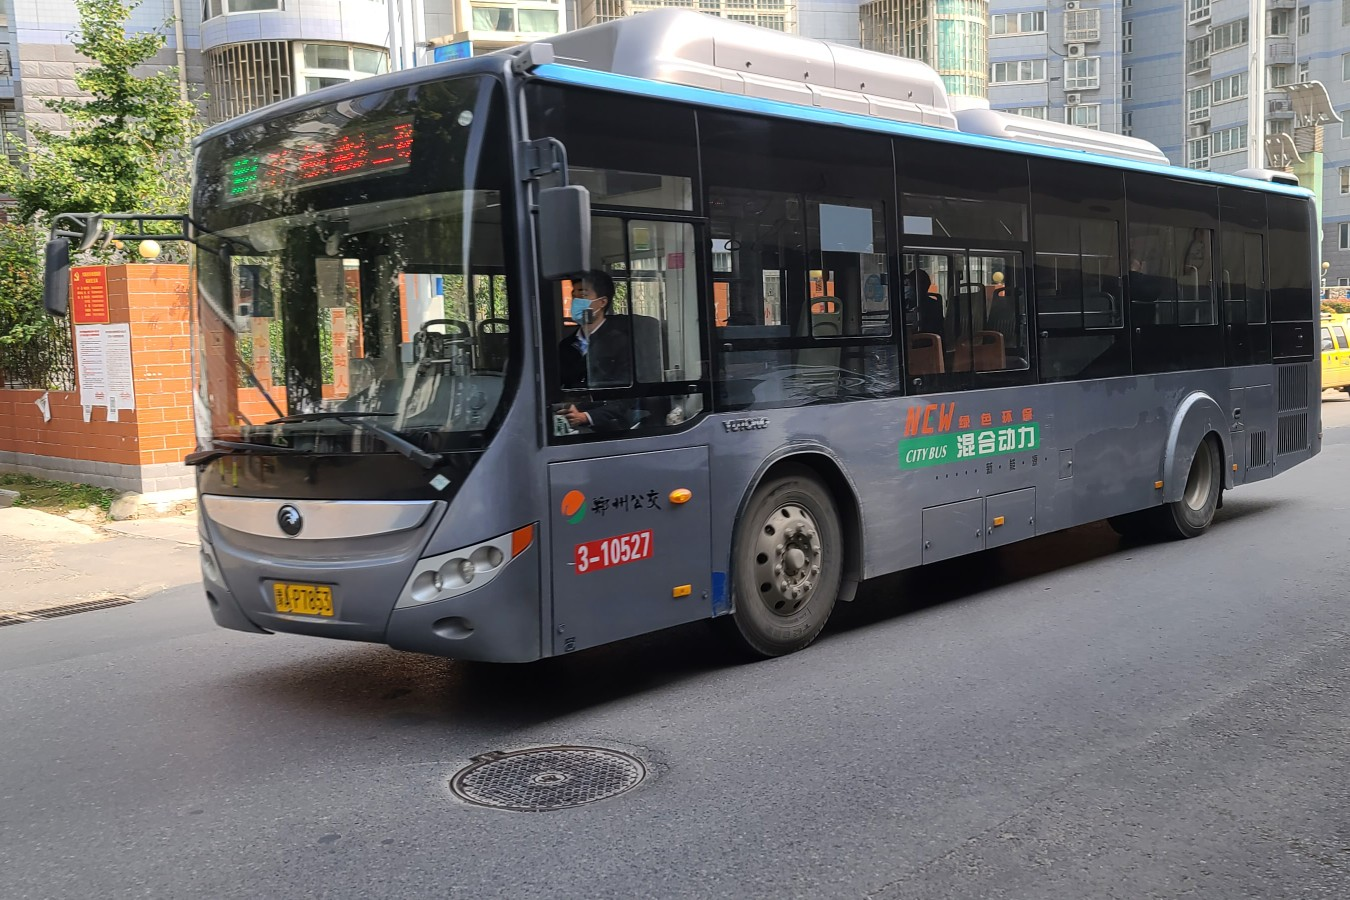 郑州上班首日乘公交者不是特别多 街头共享单车和私家车明显增多-大河报网